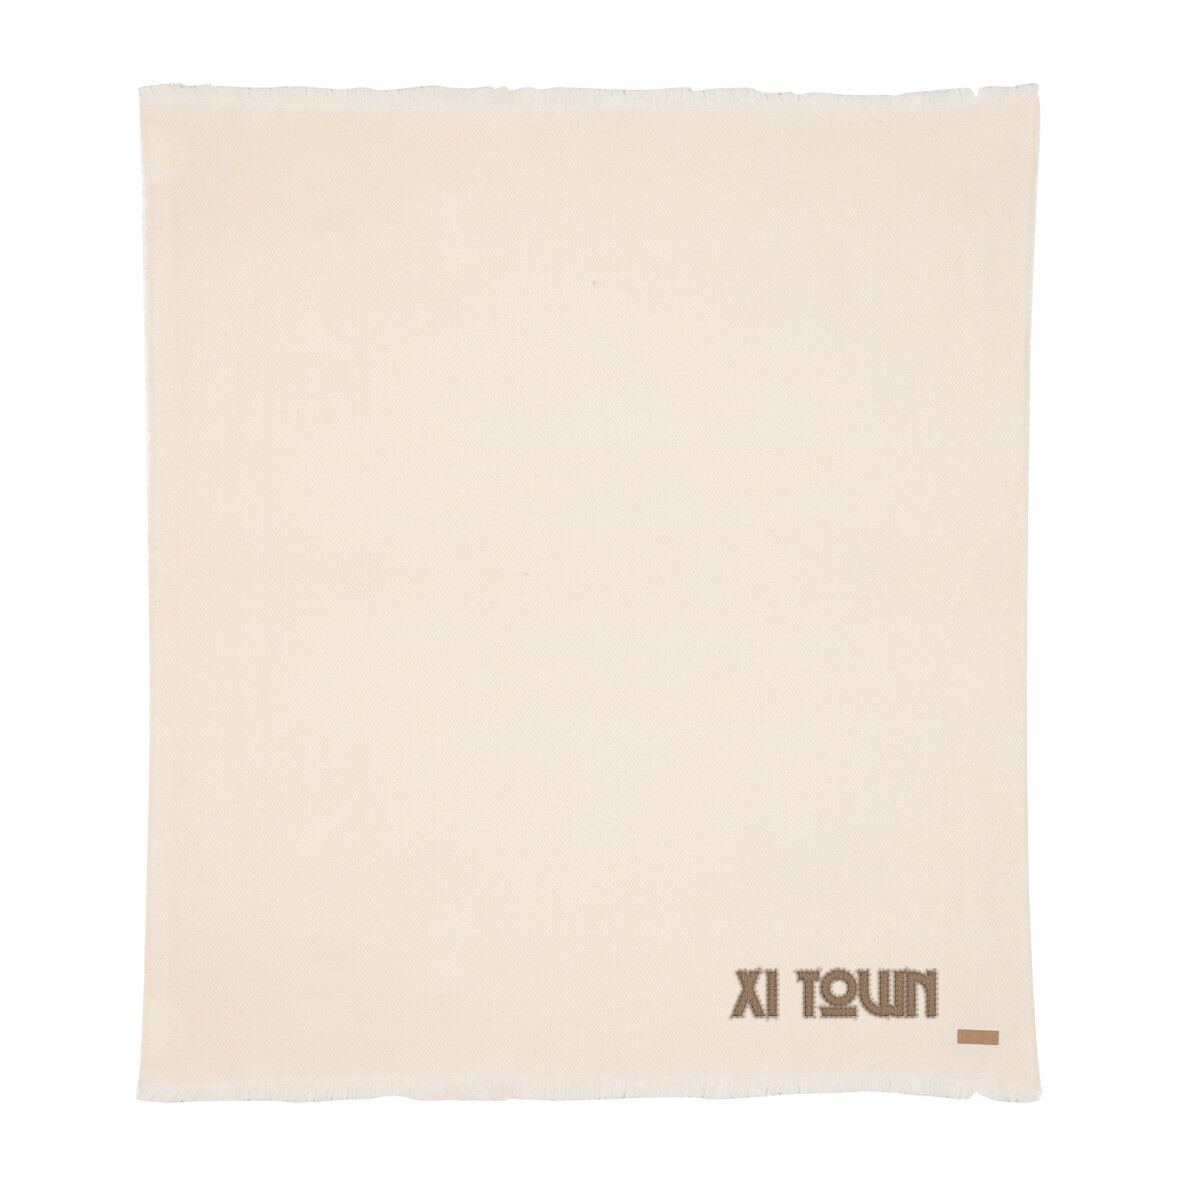 Ukiyo Polylana Woven Blanket (off white with sample branding)